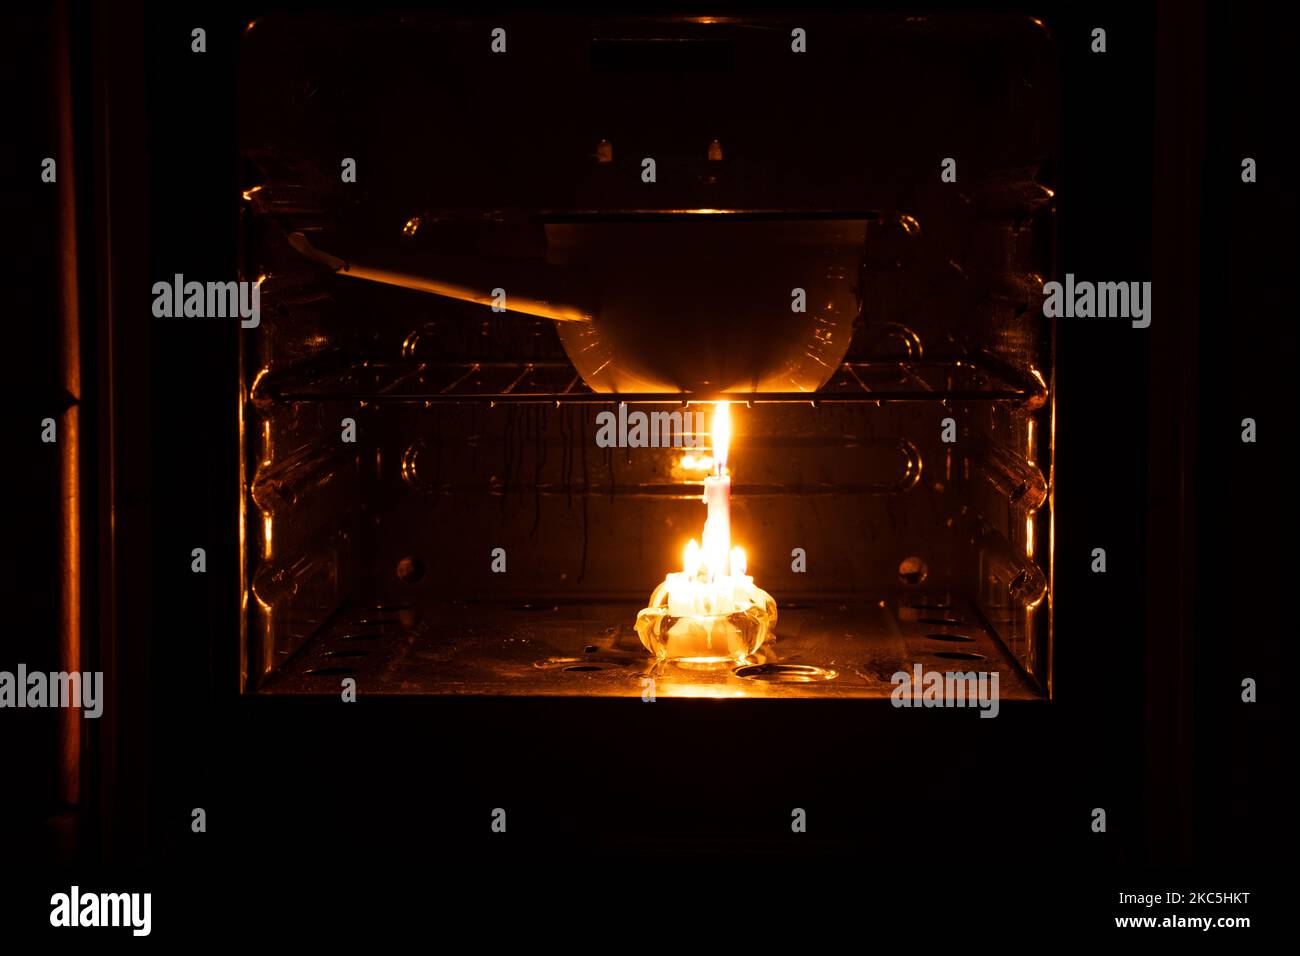 Cucinare in pentole su candele in forni con interruzioni di corrente in Ucraina durante la guerra, blackout di massa Foto Stock